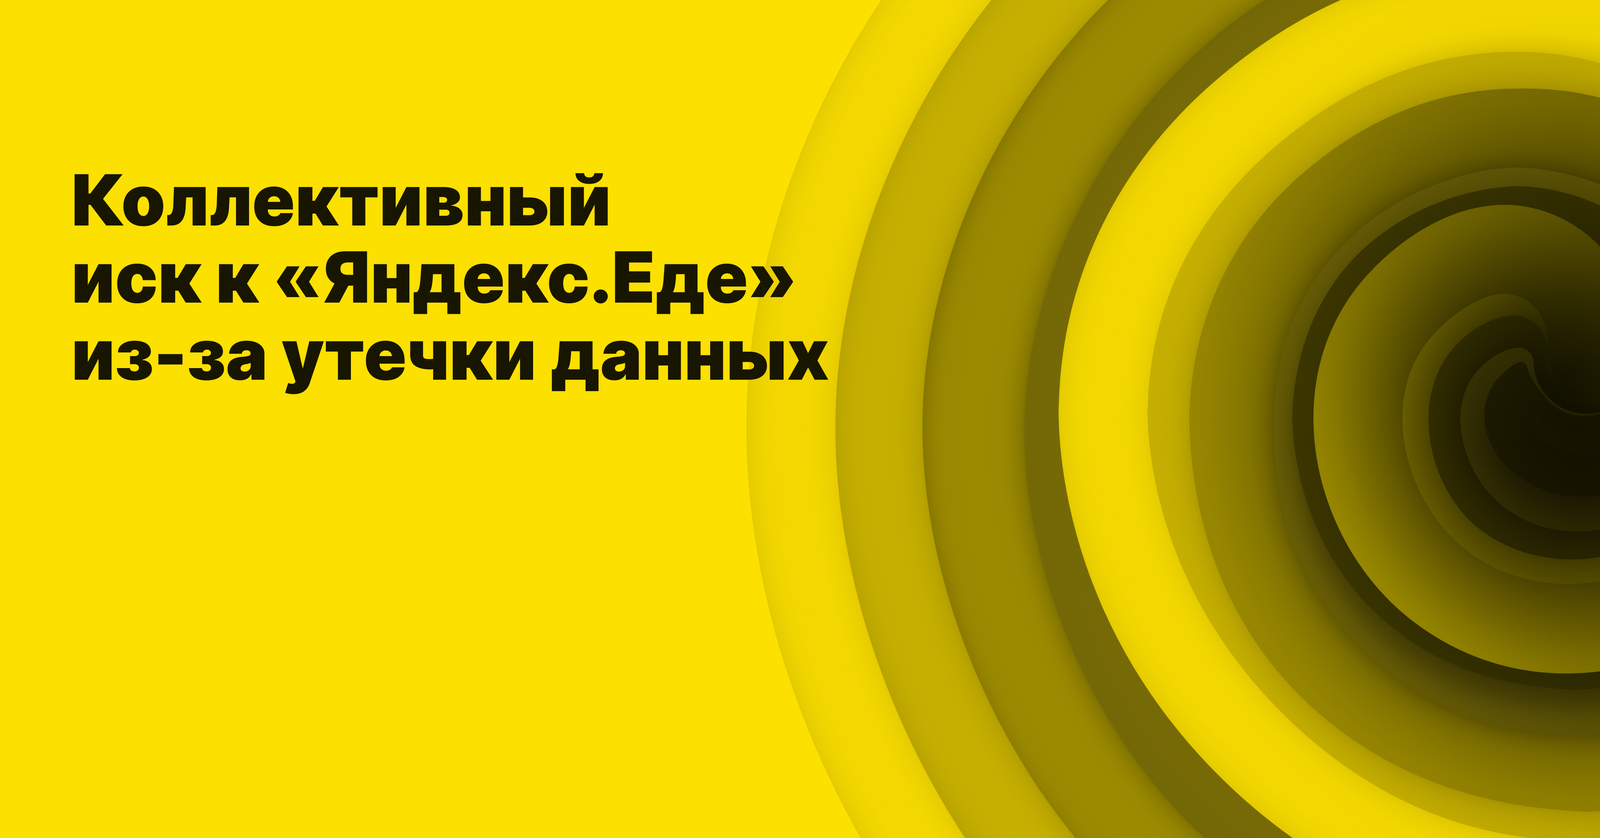 Коллективный иск к «Яндекс.Еде»